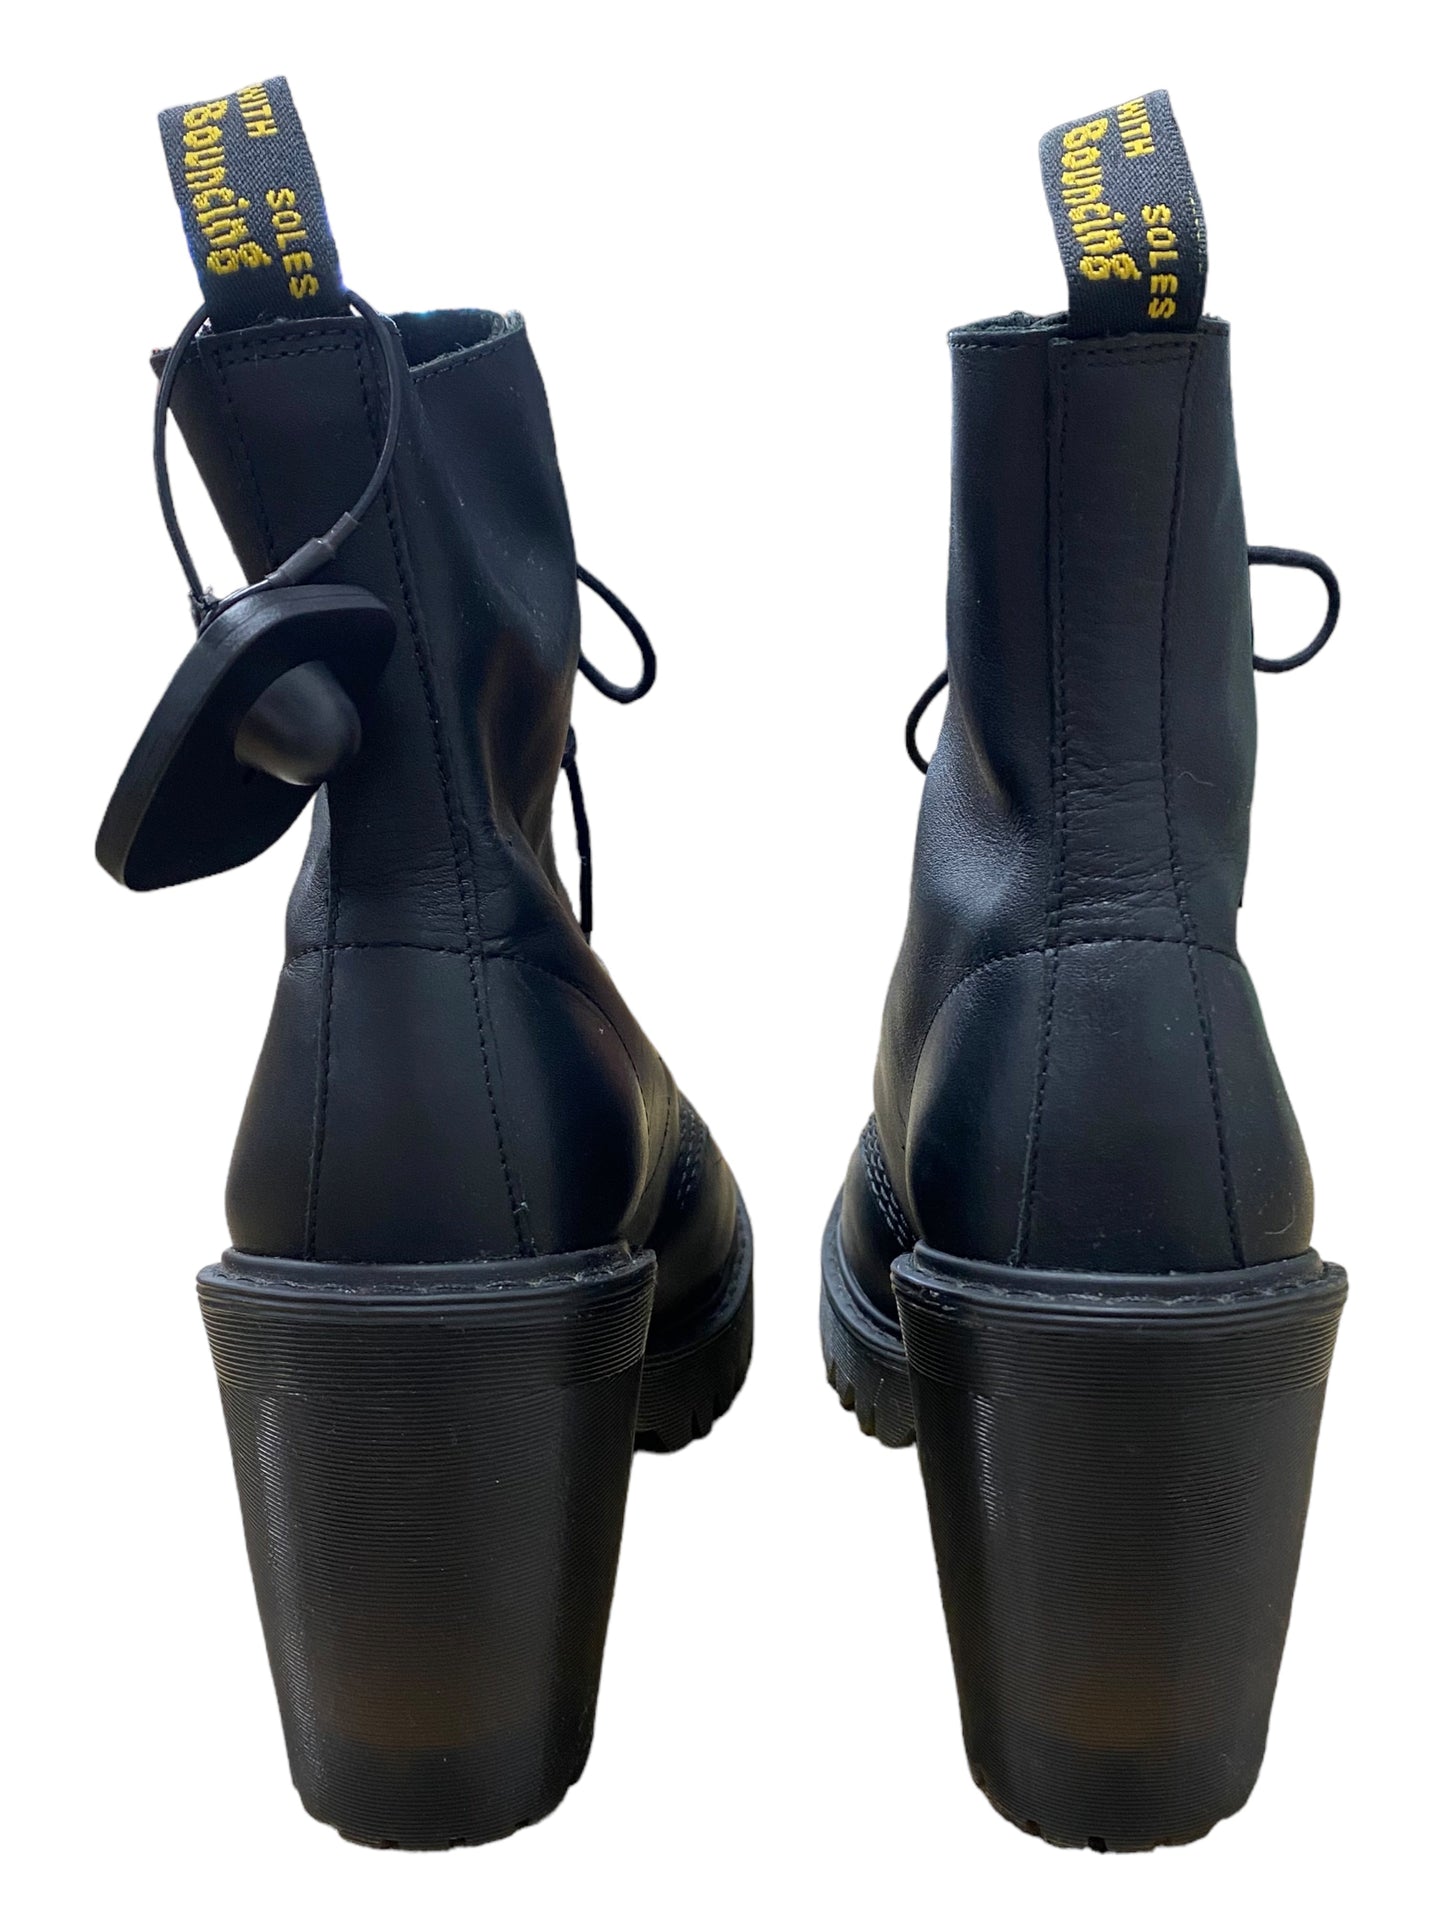 Black Boots Ankle Heels Dr Martens, Size 10